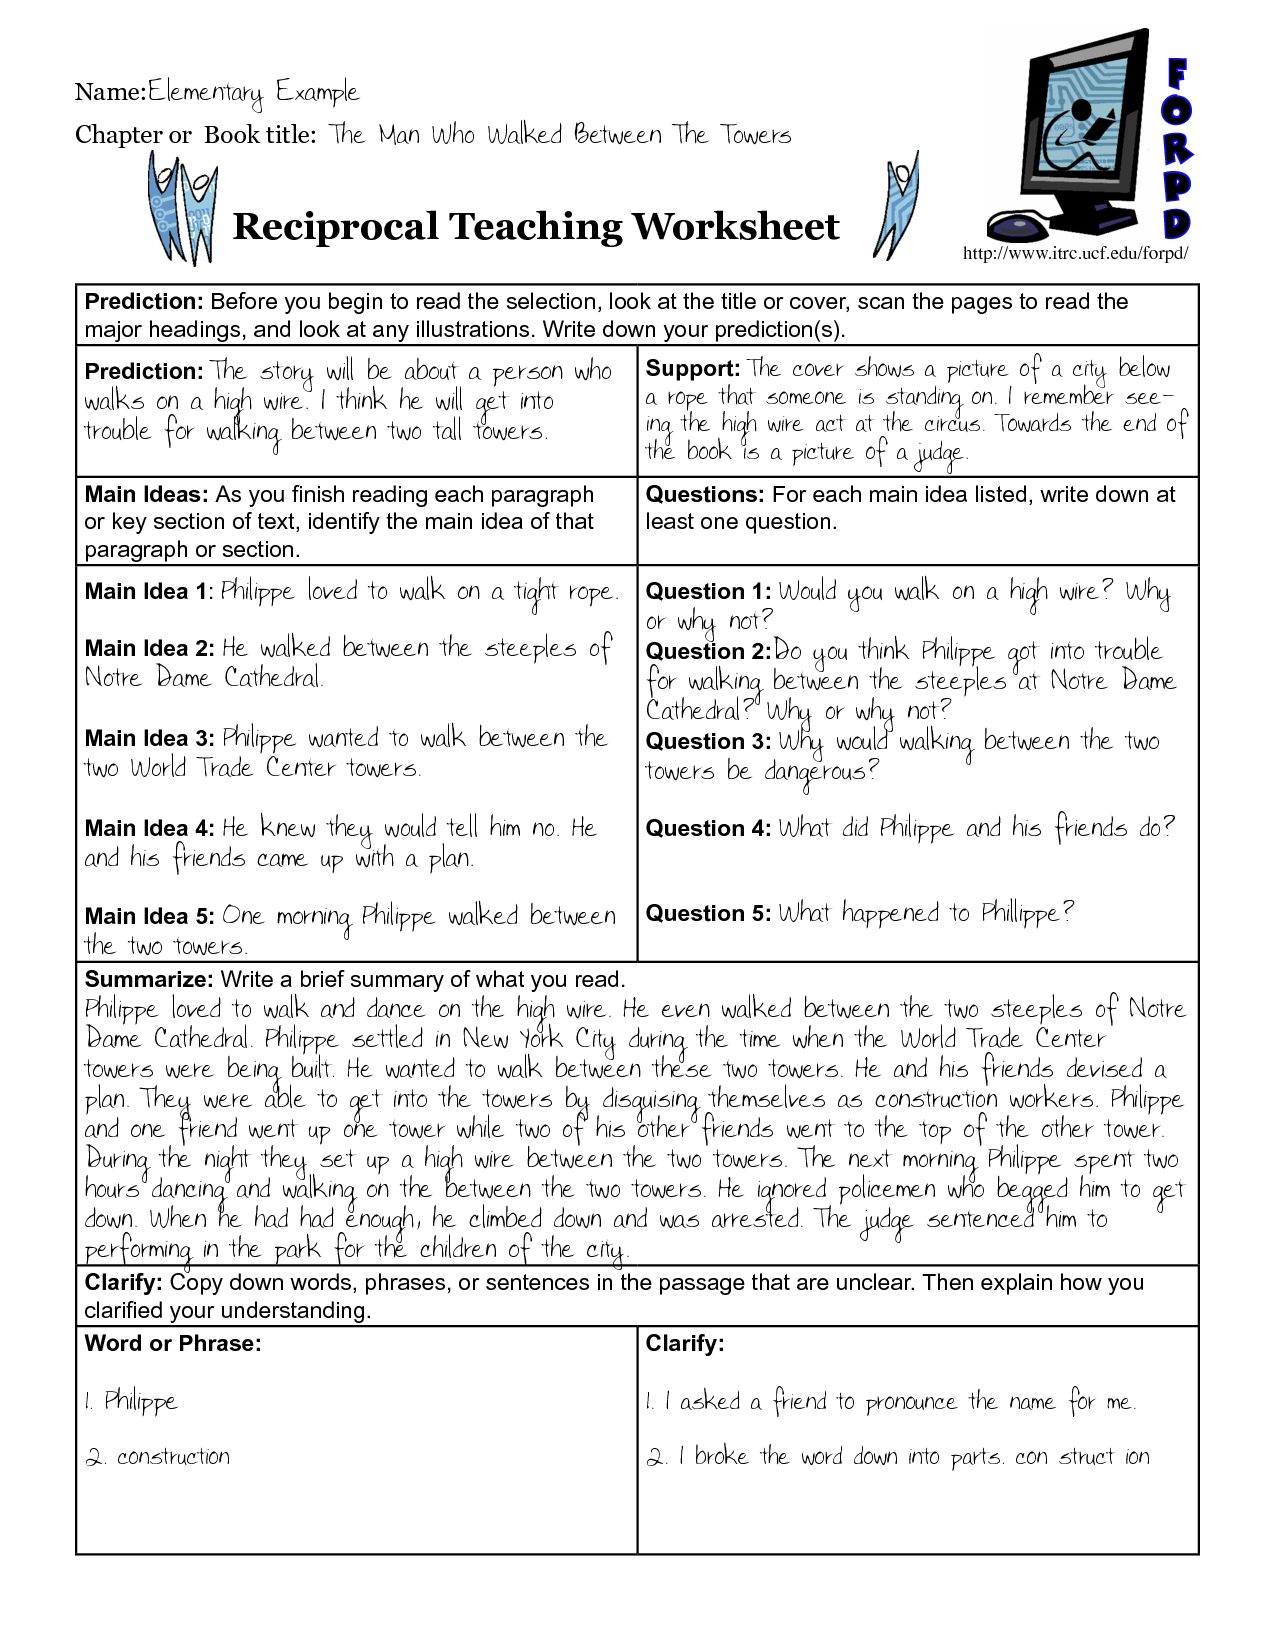 Reciprocal Teaching Worksheet Image